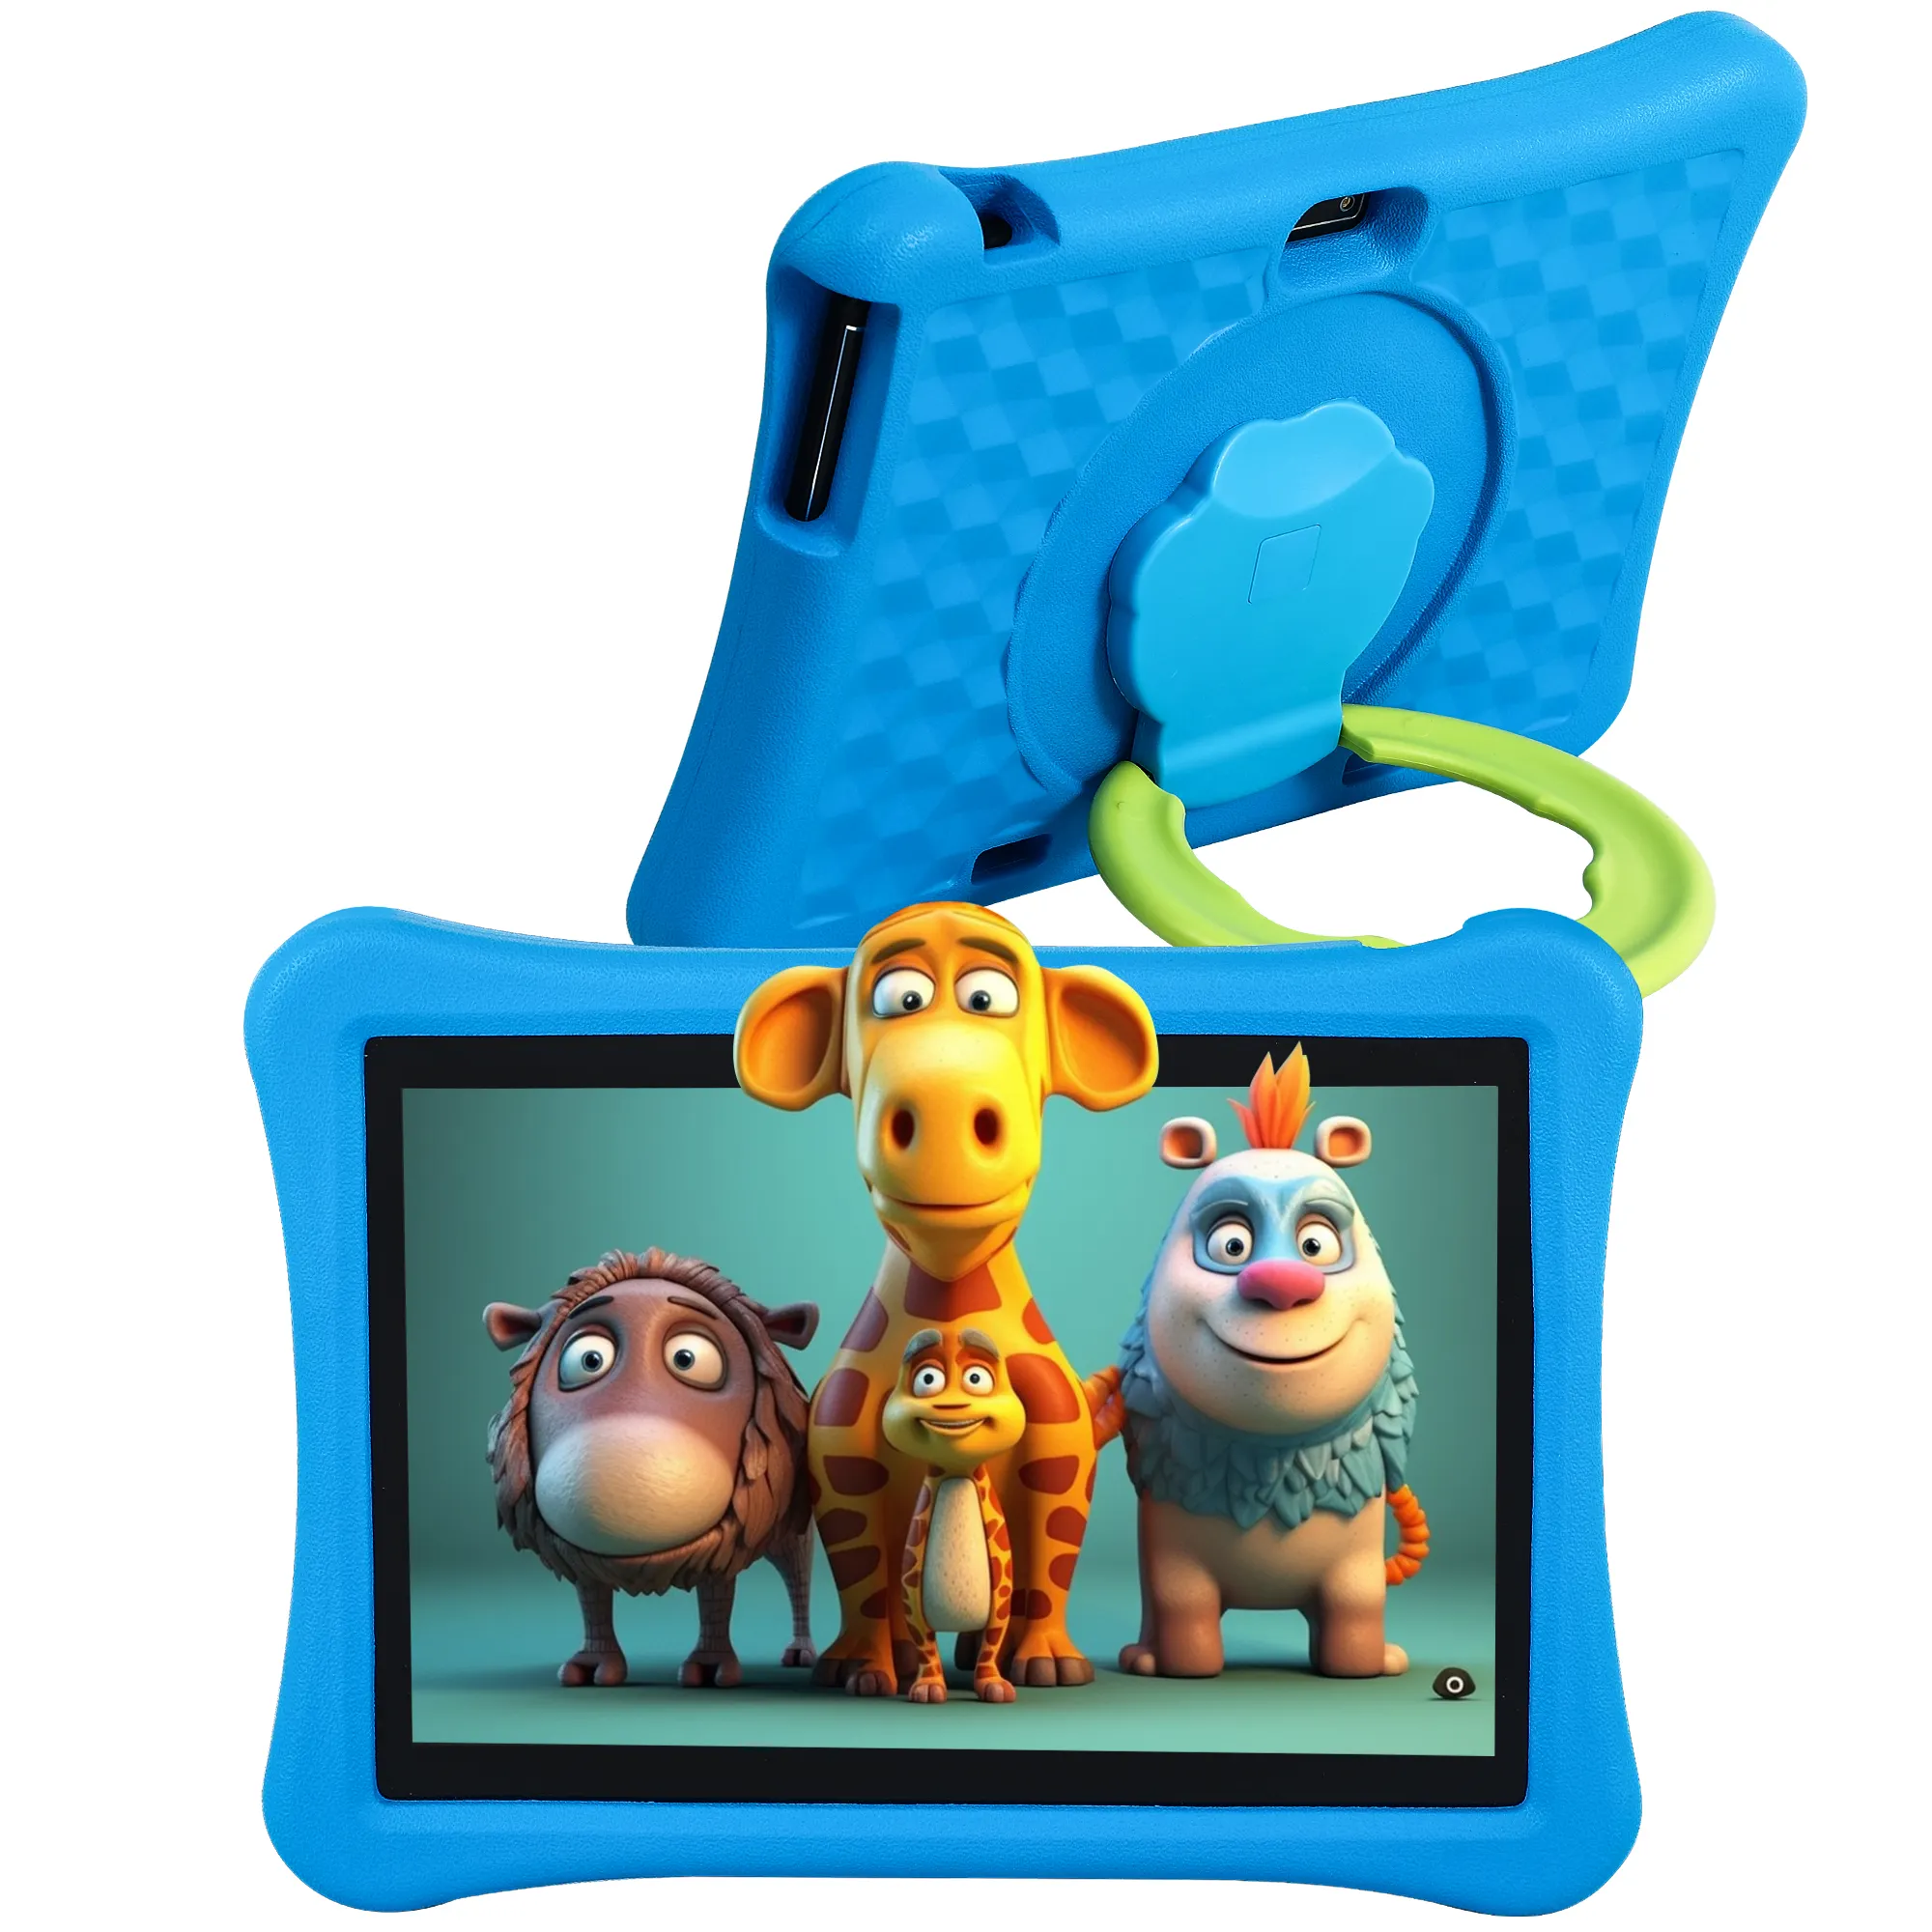 Veidoo 10 inch Android trẻ em Máy tính bảng với máy ảnh kép của cha mẹ kiểm soát giáo dục 5000mAh Tablet PC với EVA Kid-proof trường hợp